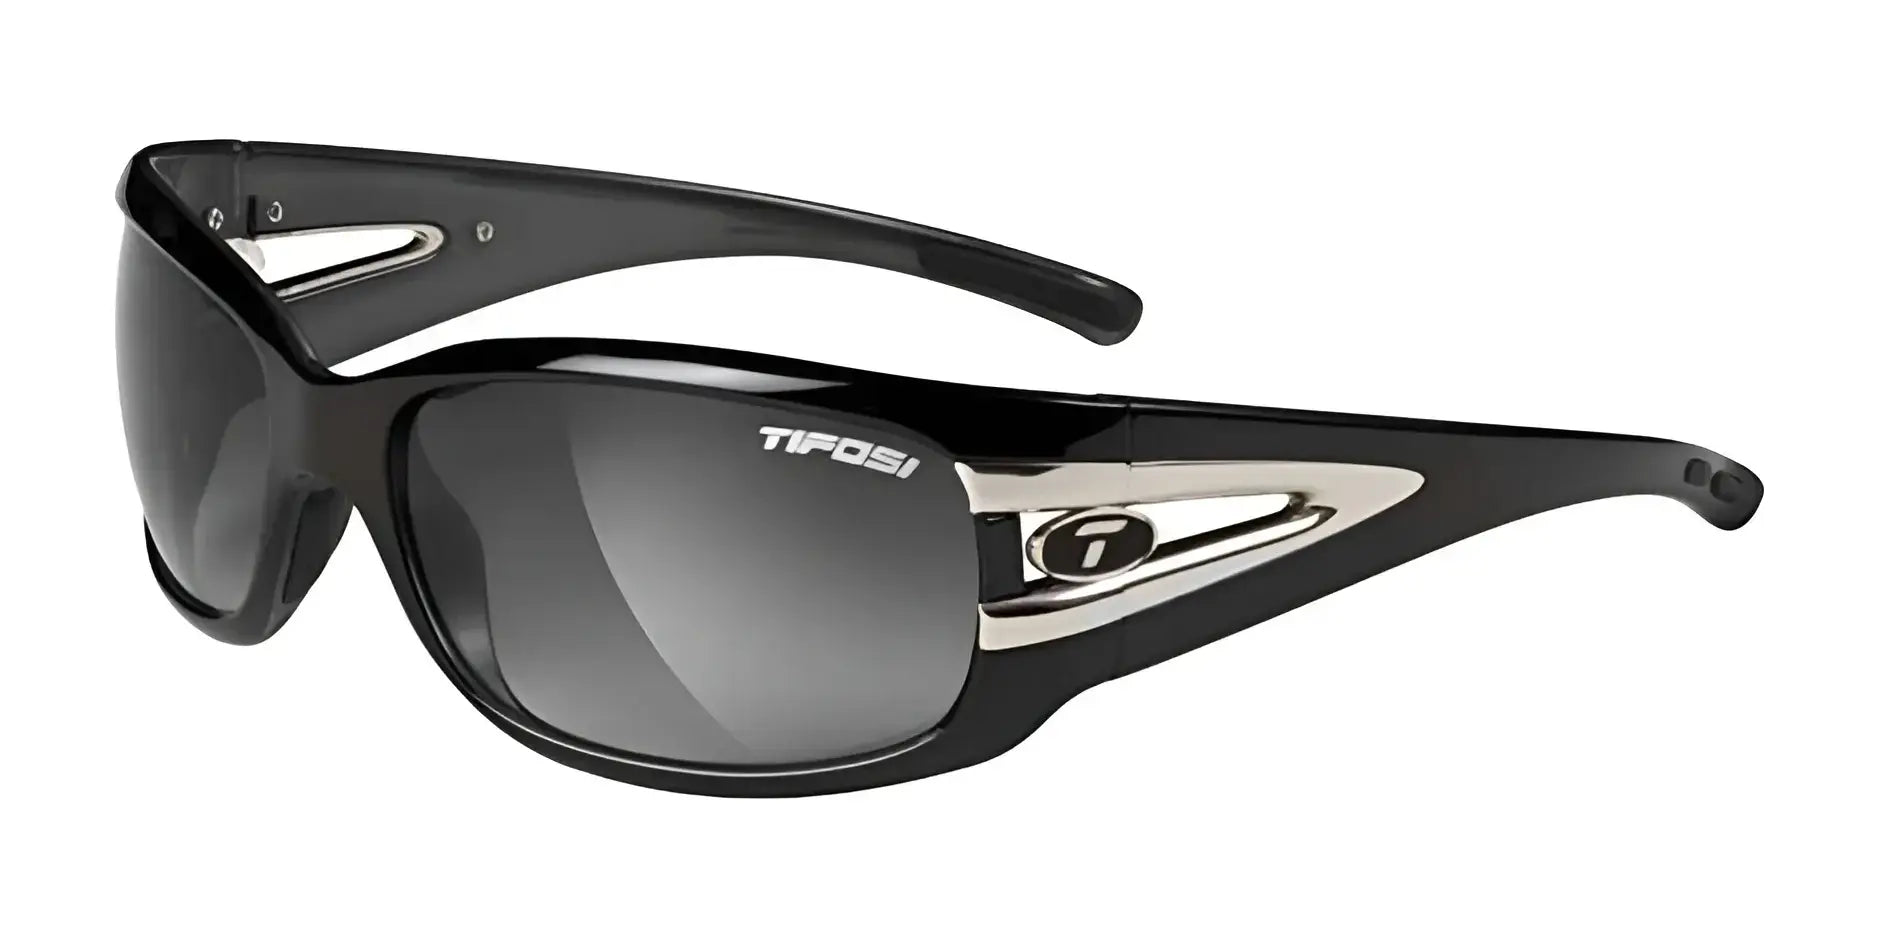 Tifosi Optics LUST Sunglasses Gloss Black